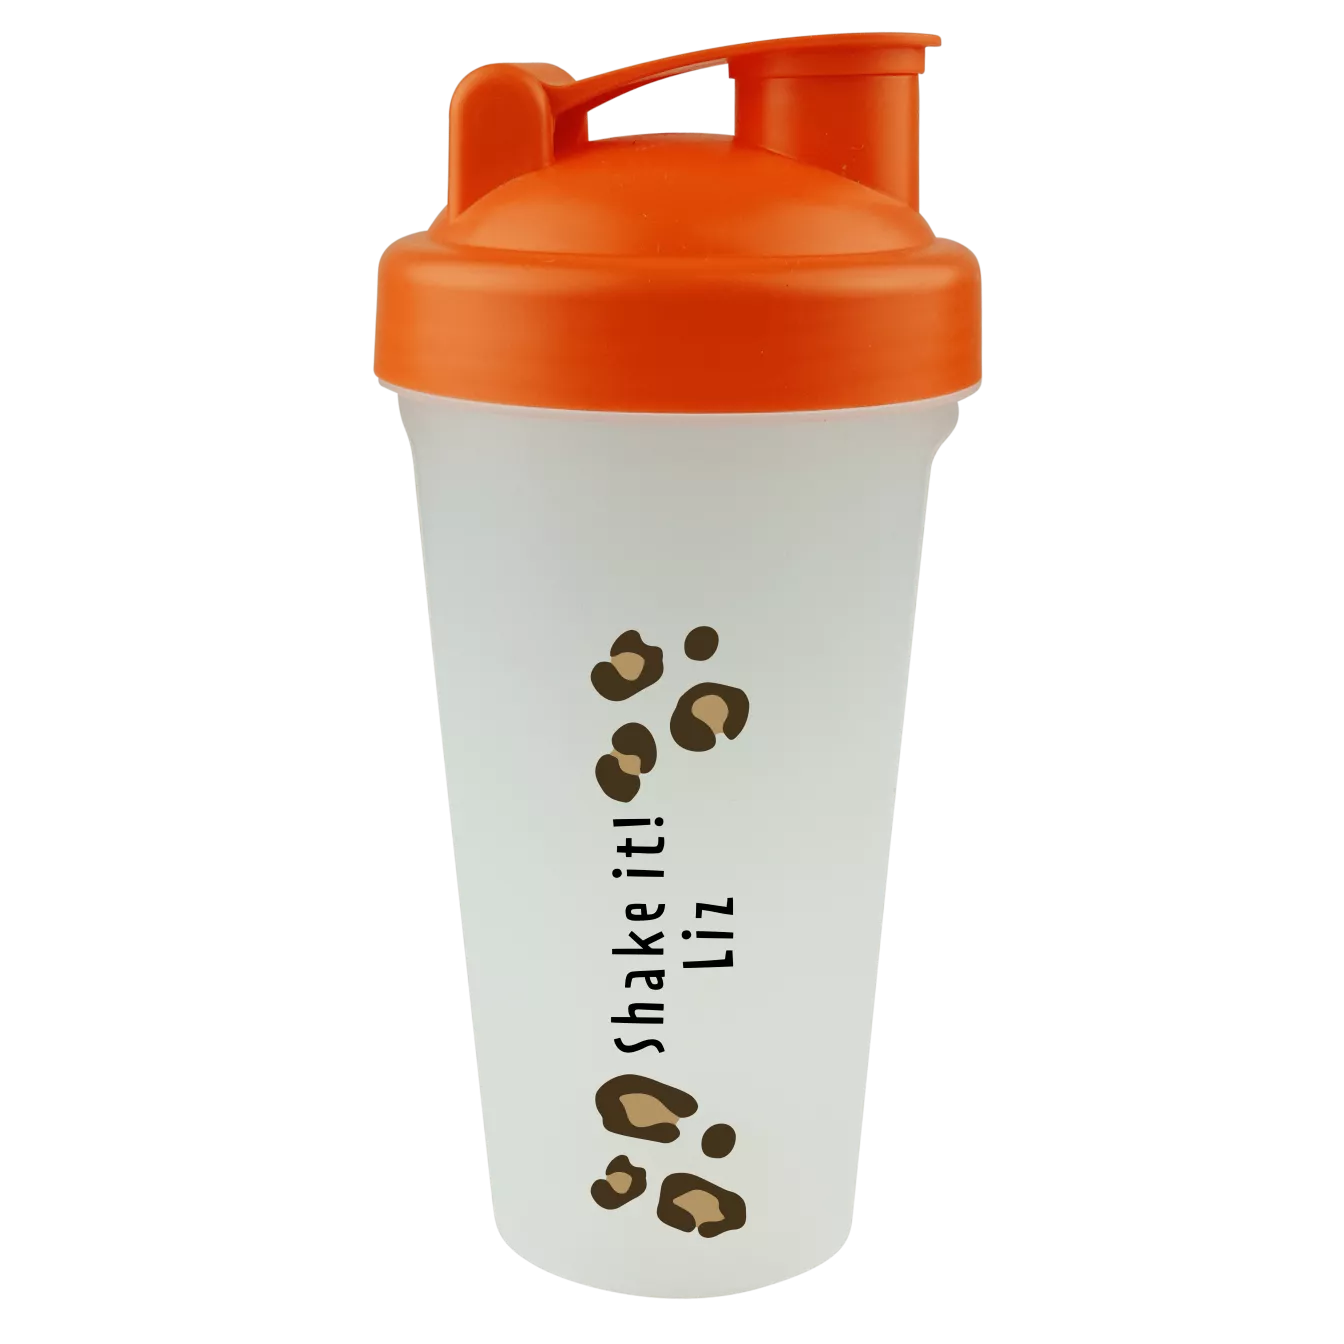 https://static.bulco.nl/production/public/product/7867/preview/front/shaker-bottle-1-size-orange-en-2418.webp